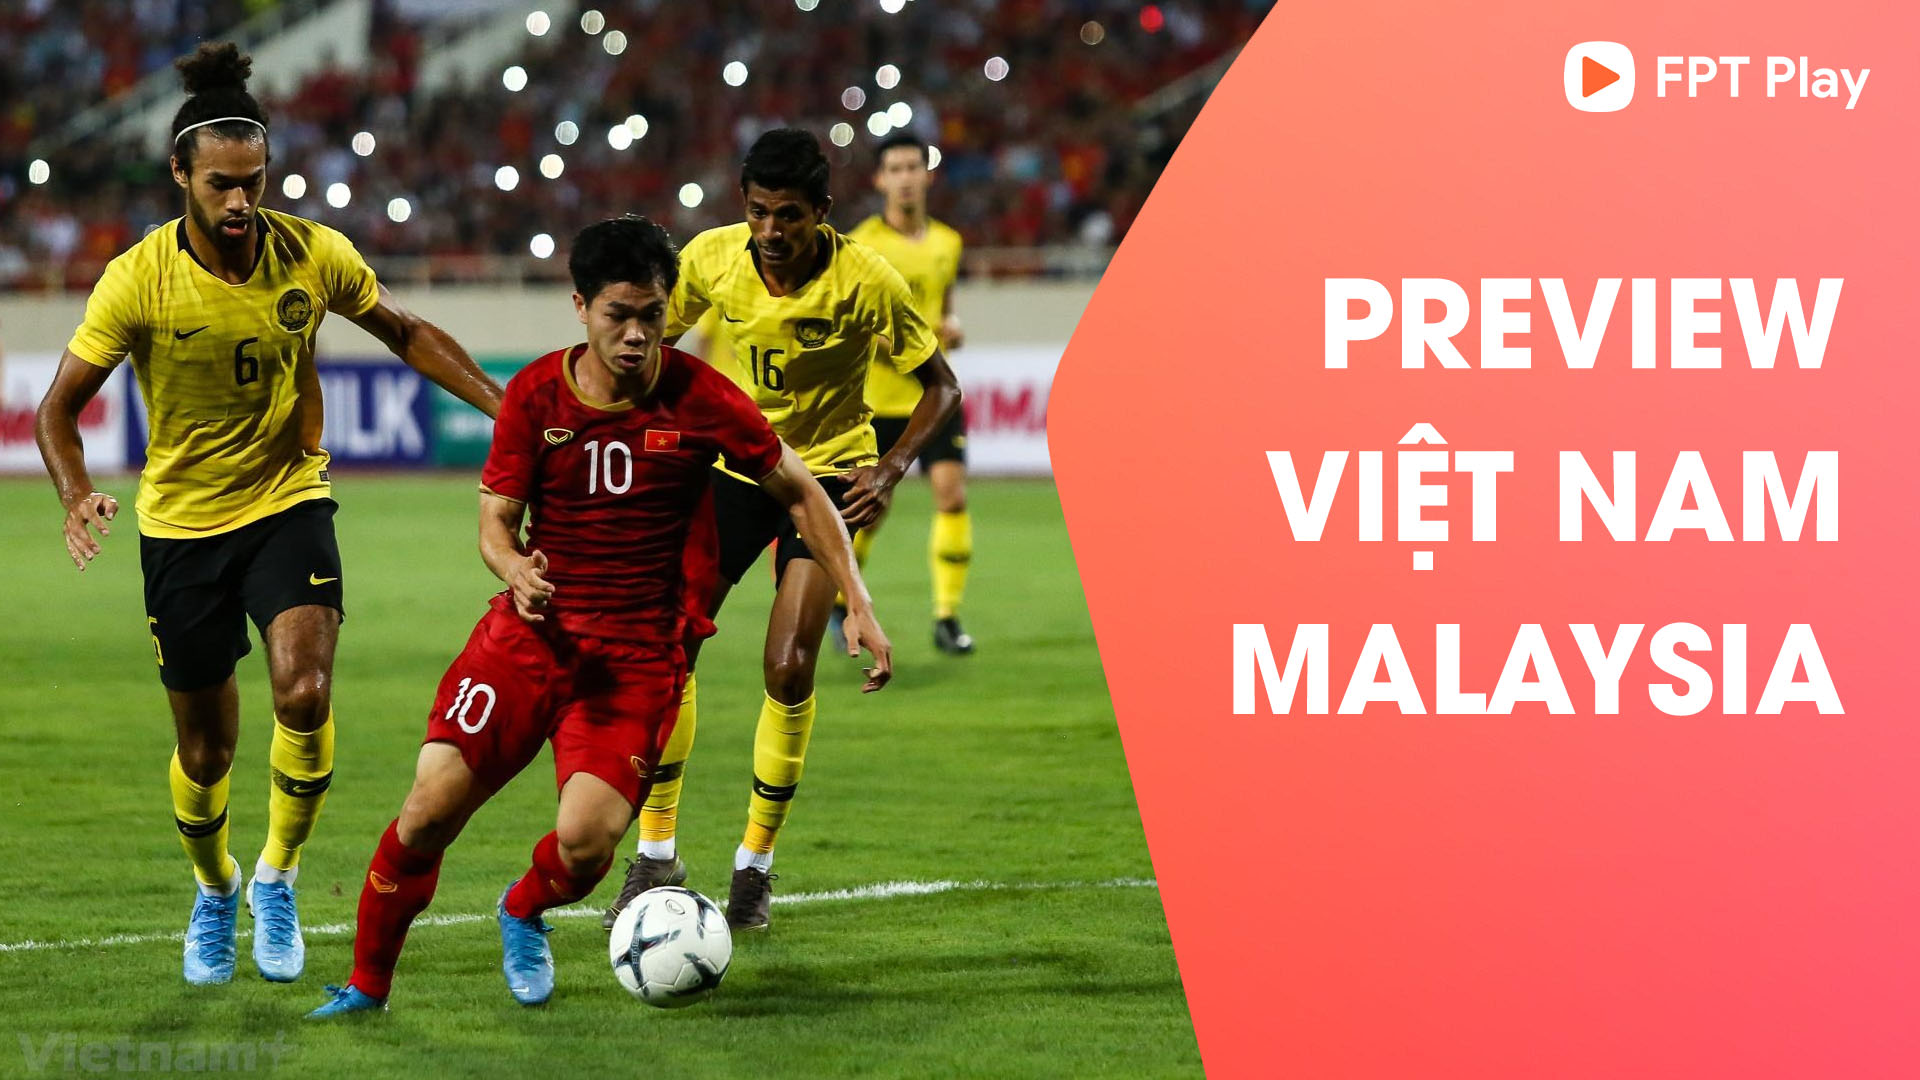 Việt Nam vs Malaysia | Chờ Công Phượng lên tiếng - Vòng loại World Cup 2022 | FPT Play